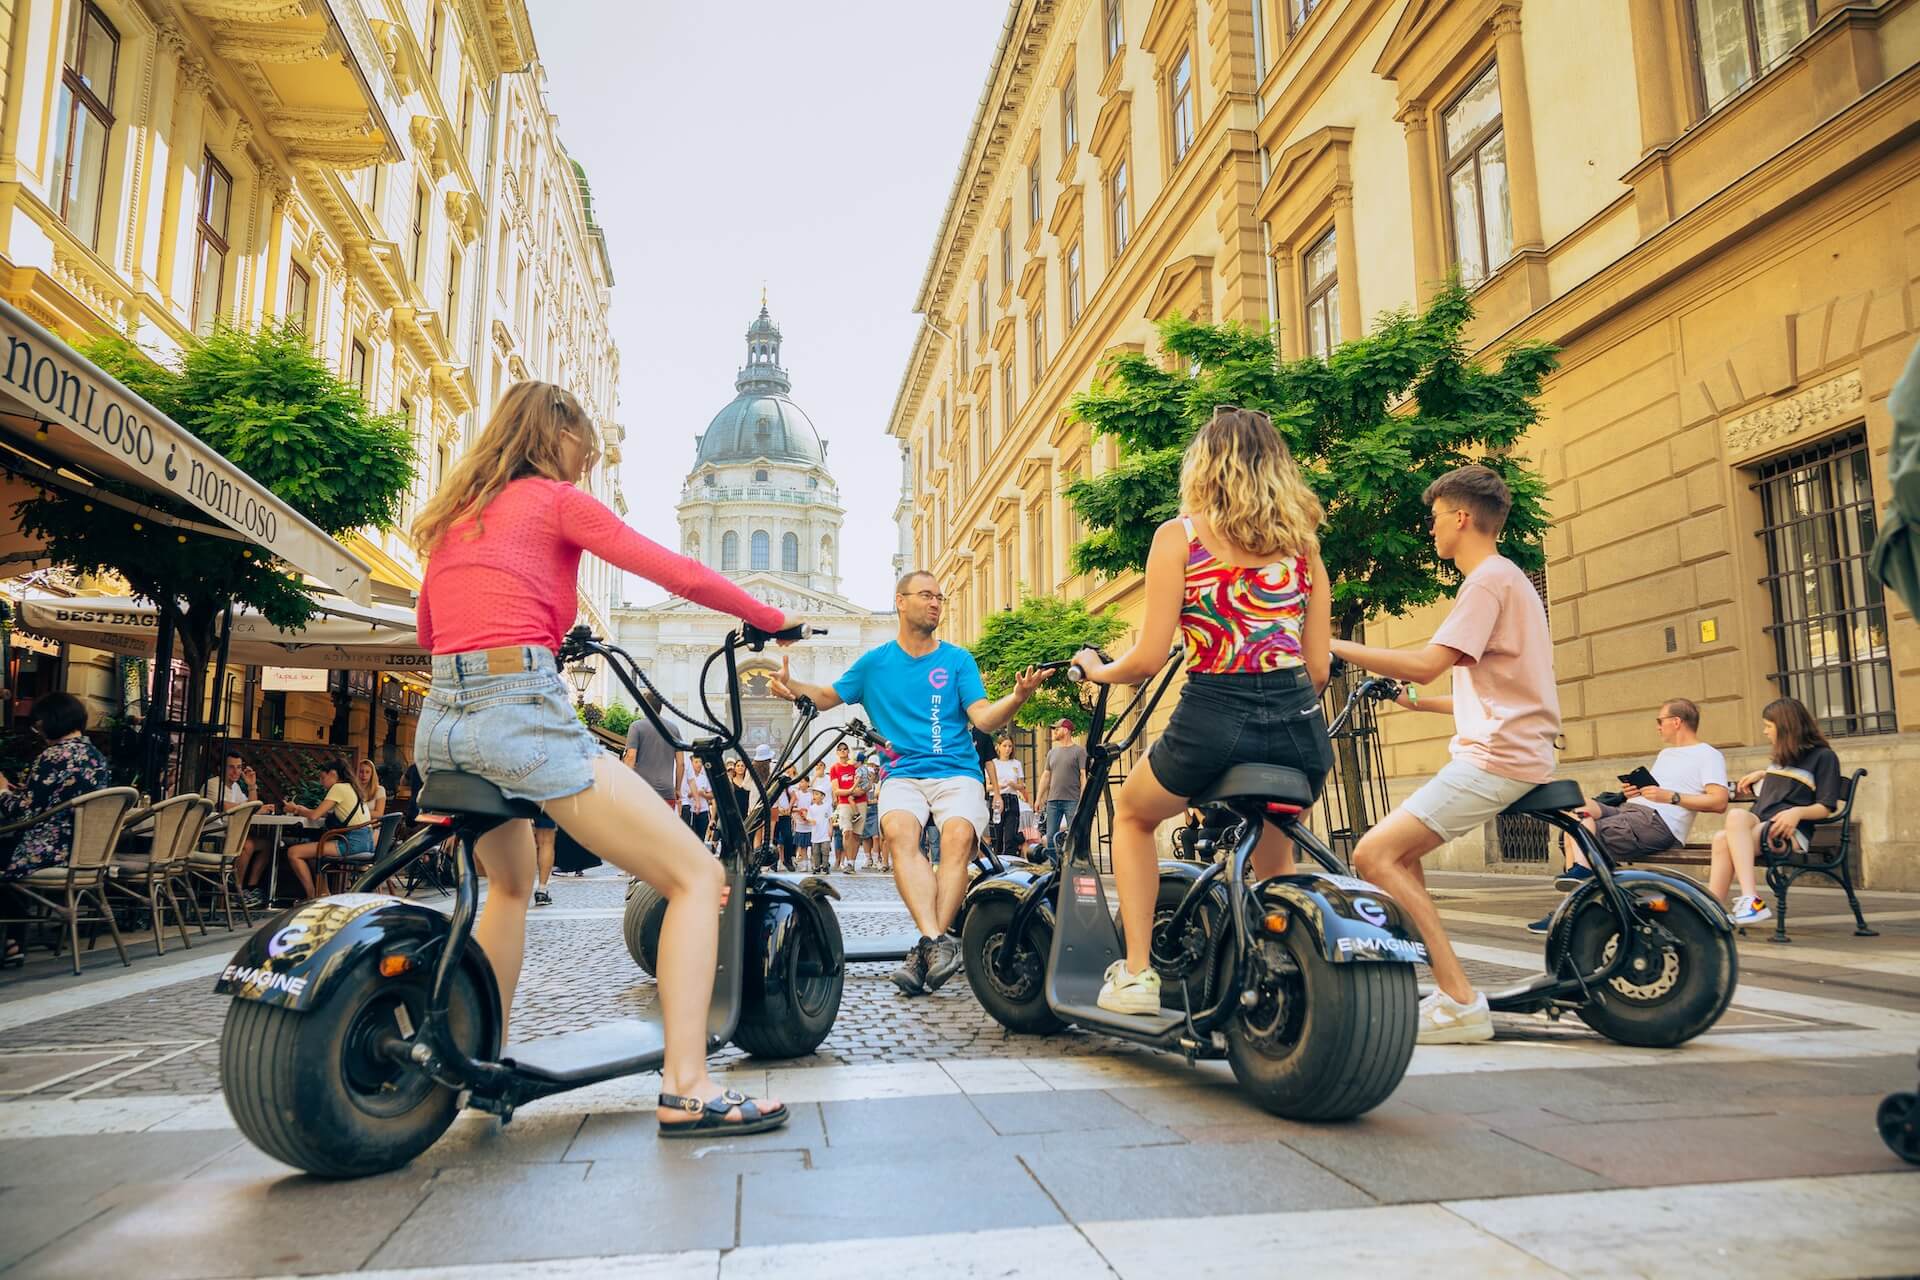 Un guía local cuenta historias sobre Budapest